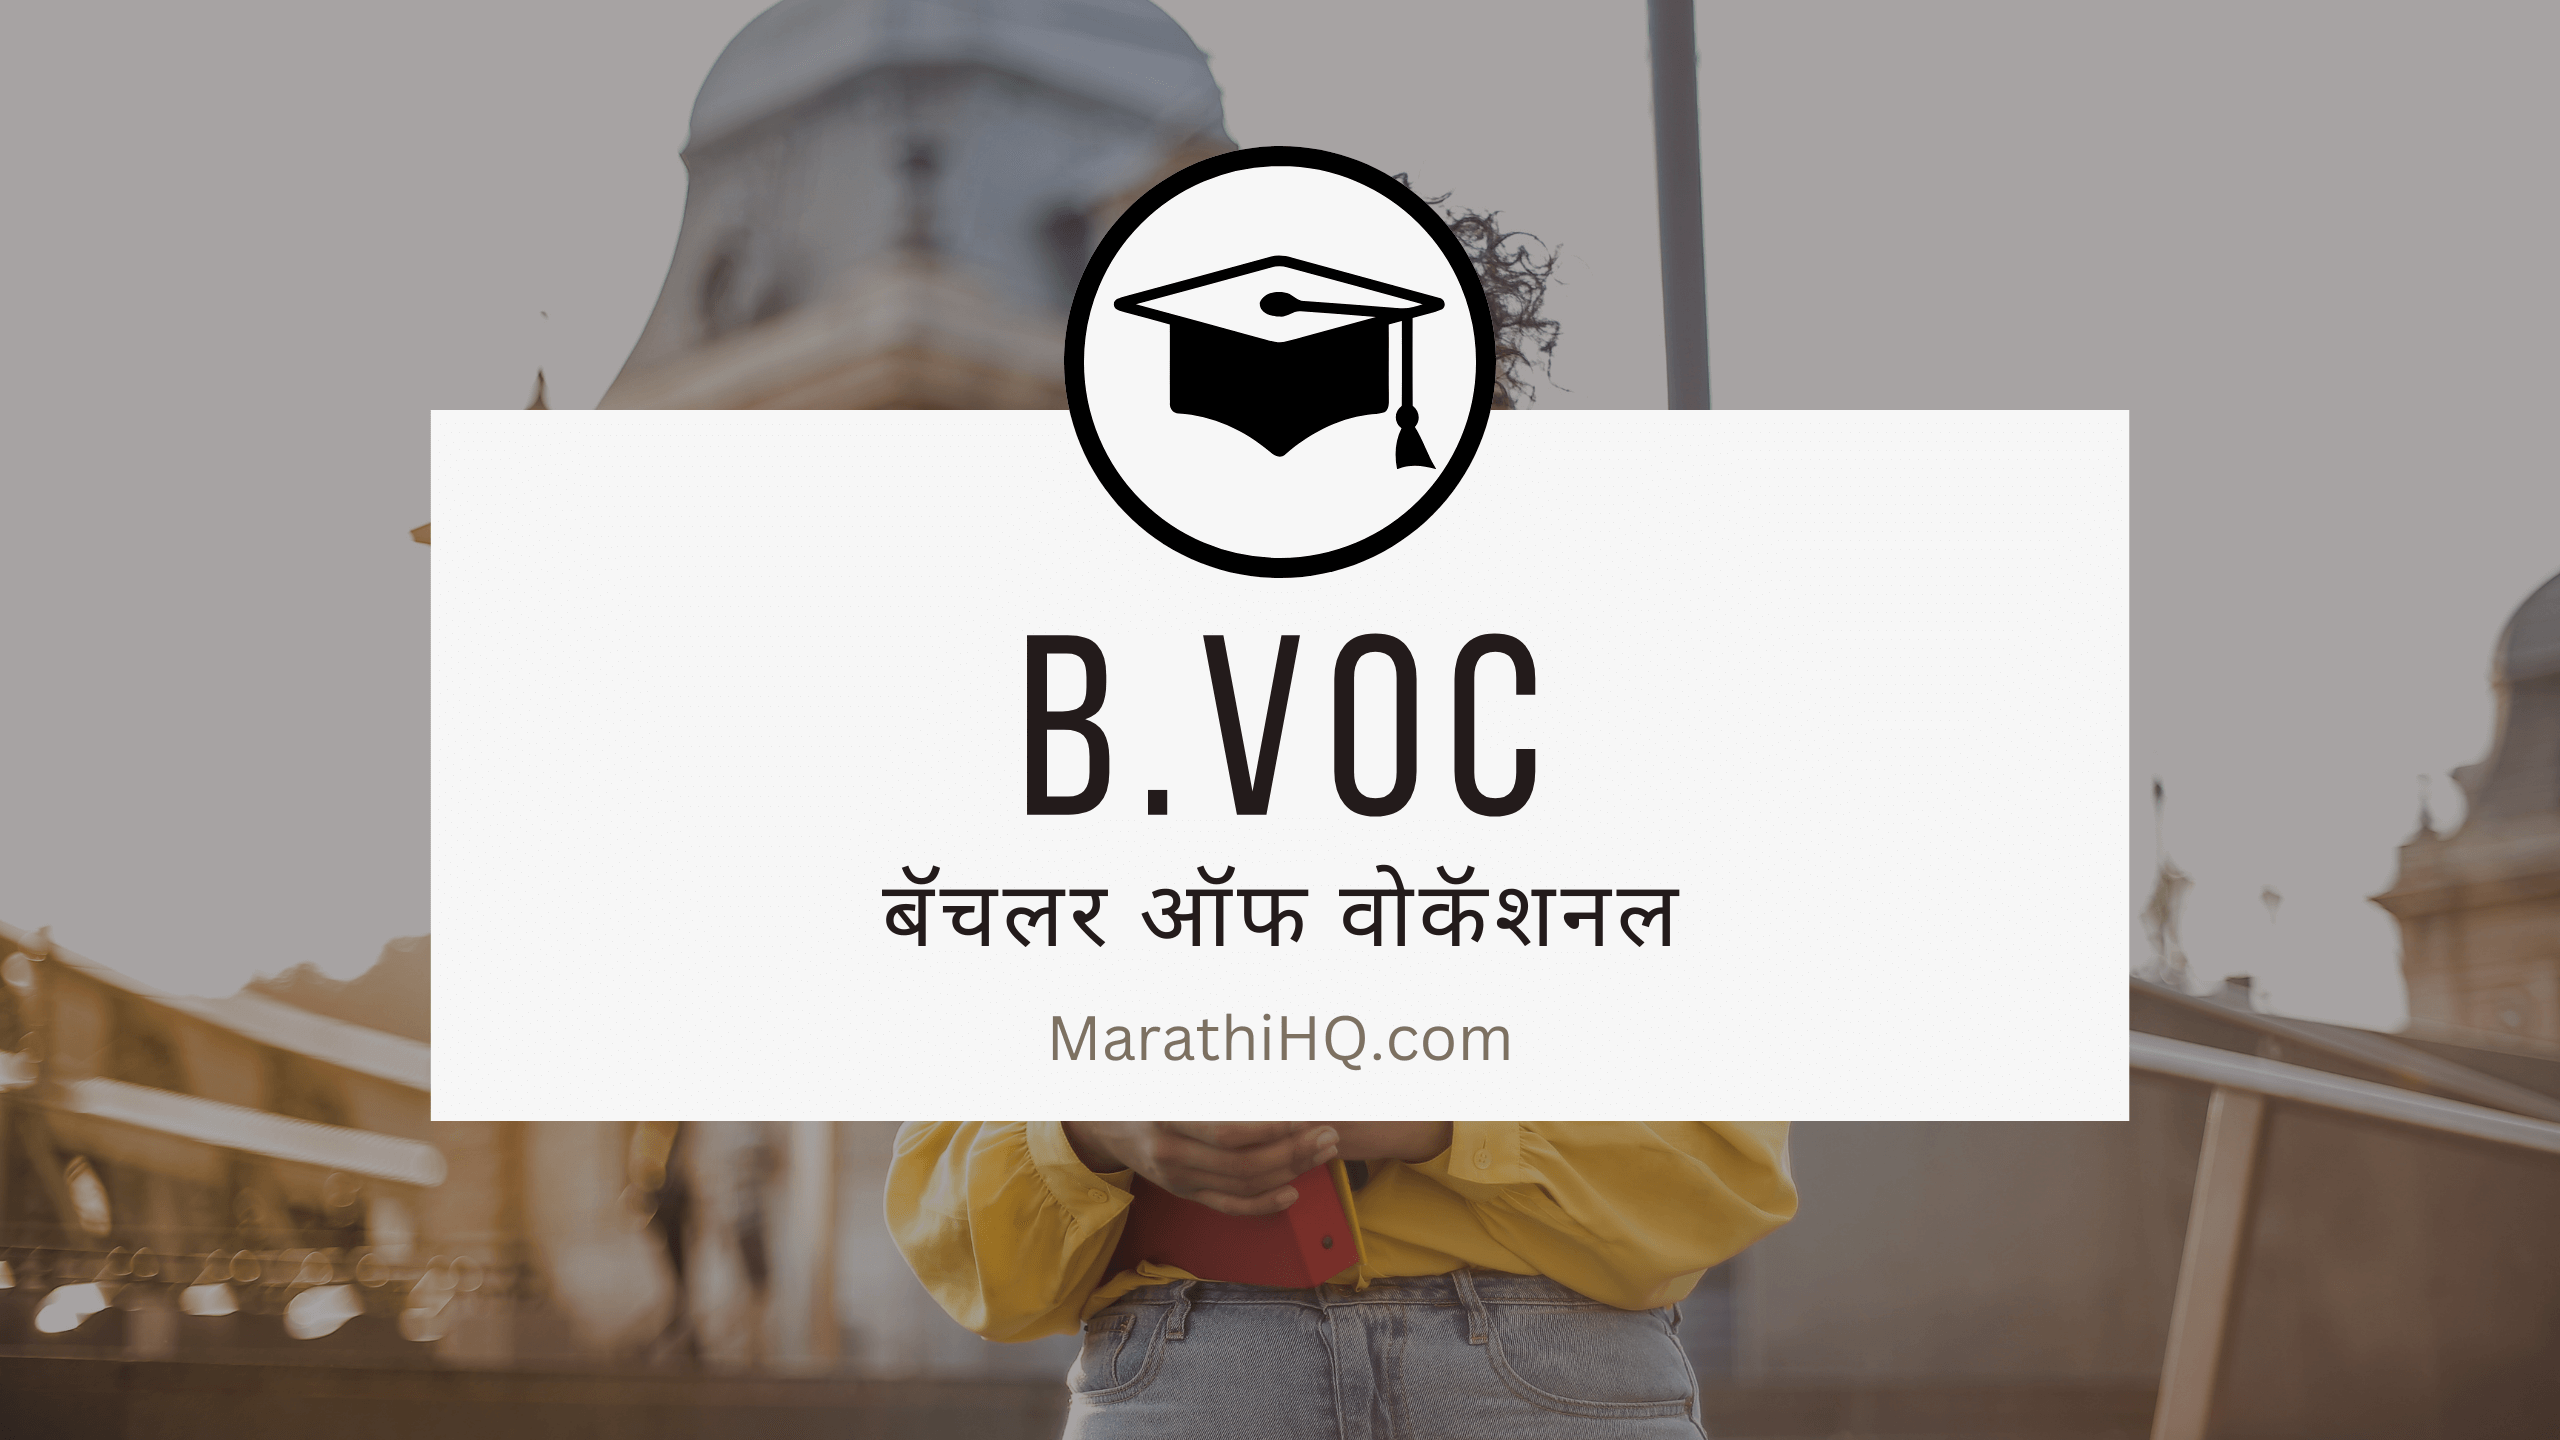 BVoc कोर्सची माहिती | BVoc course information in Marathi